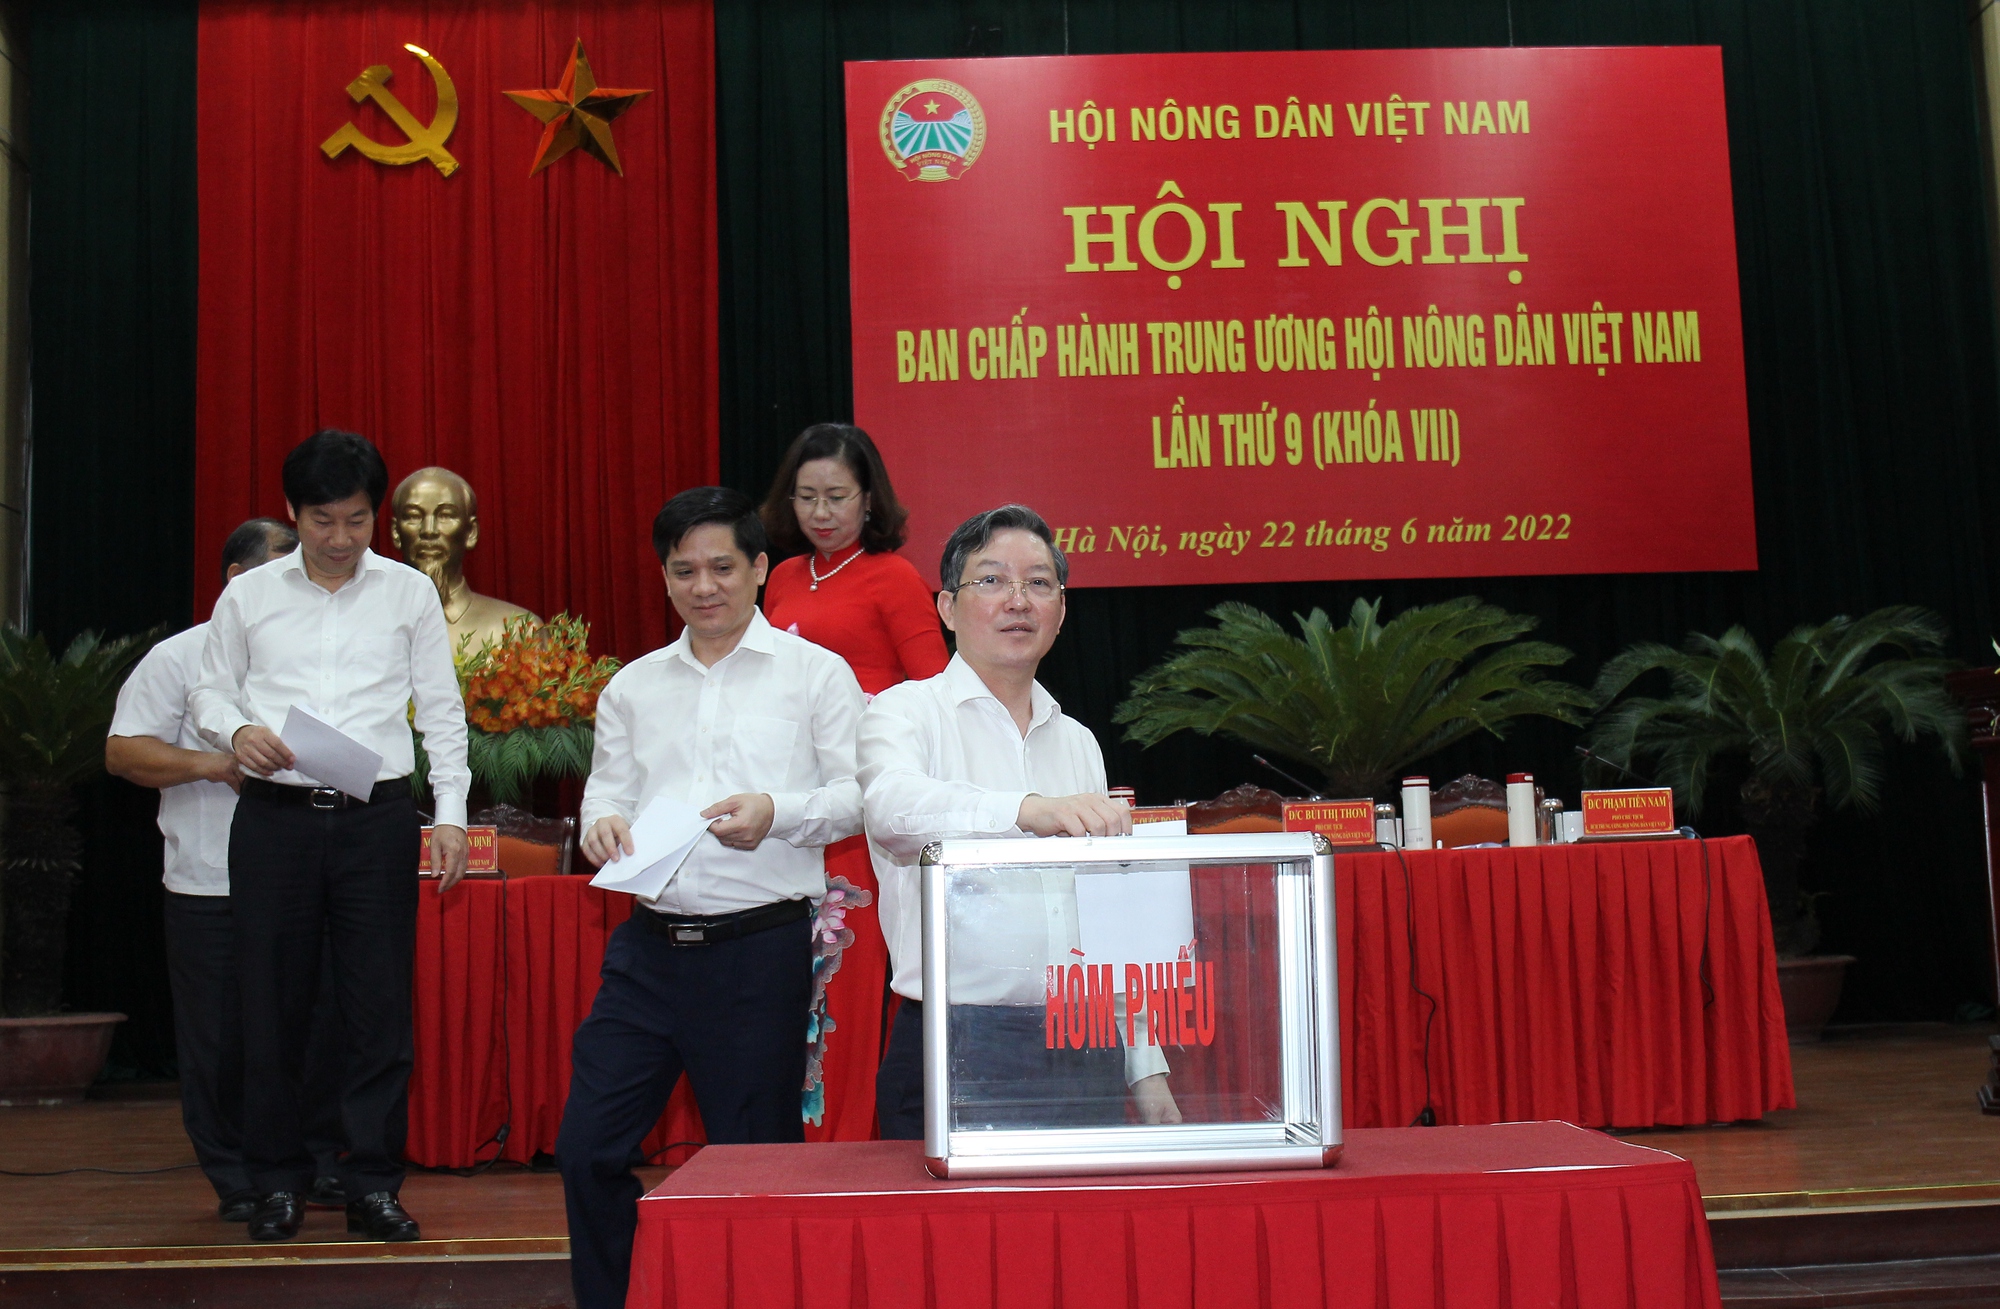 Bà Cao Xuân Thu Vân được bầu làm Phó Chủ tịch Ban Chấp hành Trung ương Hội Nông dân Việt Nam